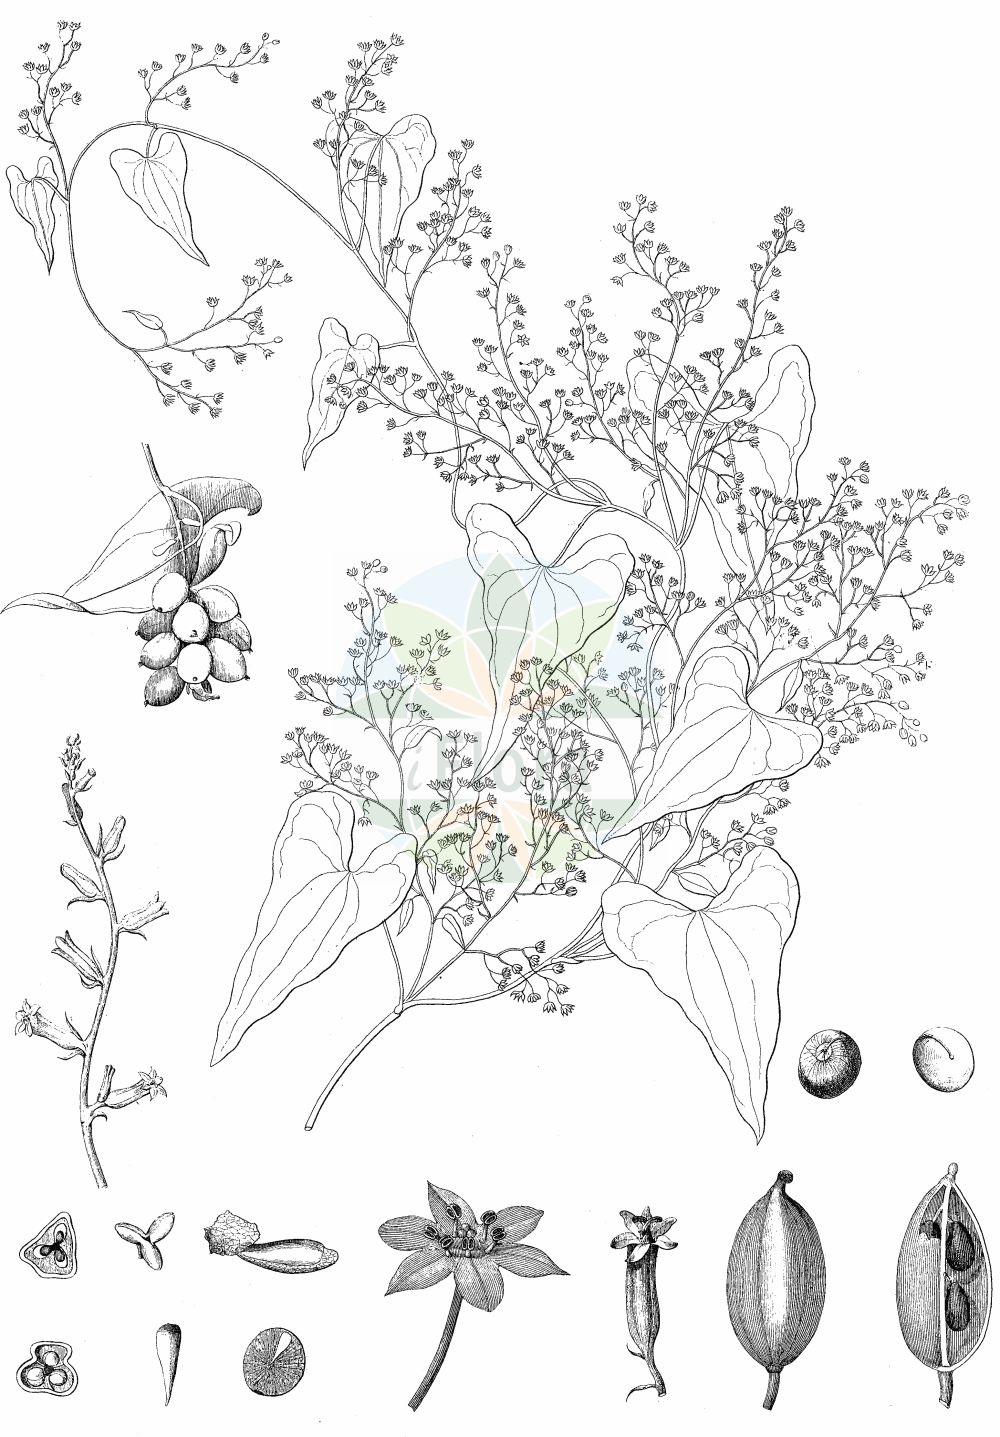 Historische Abbildung von Dioscorea communis (Gewöhnliche Schmerwurz - Black Bryony). Das Bild zeigt Blatt, Bluete, Frucht und Same. ---- Historical Drawing of Dioscorea communis (Gewöhnliche Schmerwurz - Black Bryony). The image is showing leaf, flower, fruit and seed.(Dioscorea communis,Gewöhnliche Schmerwurz,Black Bryony,Dioscorea canariensis,Dioscorea communis,Tamus baccifera,Tamus canariensis,Tamus cirrhosa,Tamus communis,Tamus cordifolia,Tamus cretica,Tamus edulis,Tamus norsa,Tamus parviflora,Tamus racemosa,Gewoehnliche Schmerwurz,Feuerwurzel,Schmerwurz,Black Bryony,Dioscorea,Yamswurzel,Yam,Dioscoreaceae,Yamswurzelgewächse,Yam family,Blatt,Bluete,Frucht,Same,leaf,flower,fruit,seed)